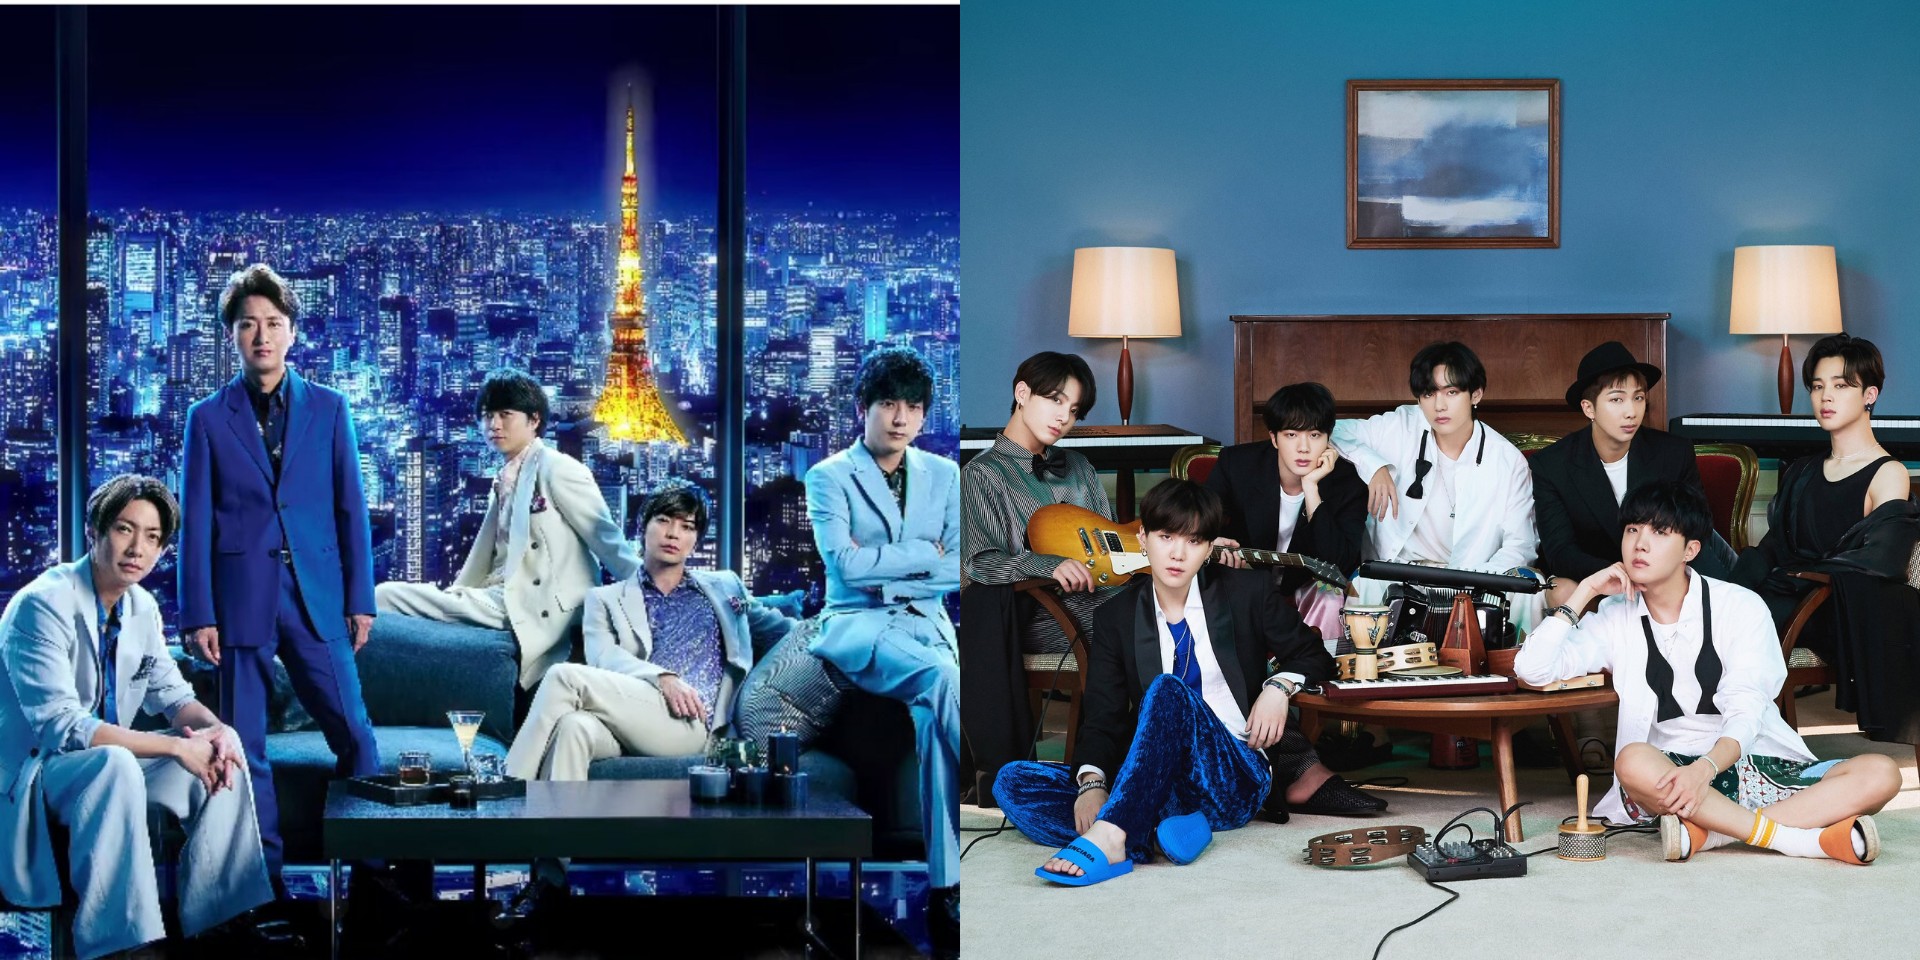 ARASHI and BTS to perform at 62nd Japan Record Awards Bandwagon